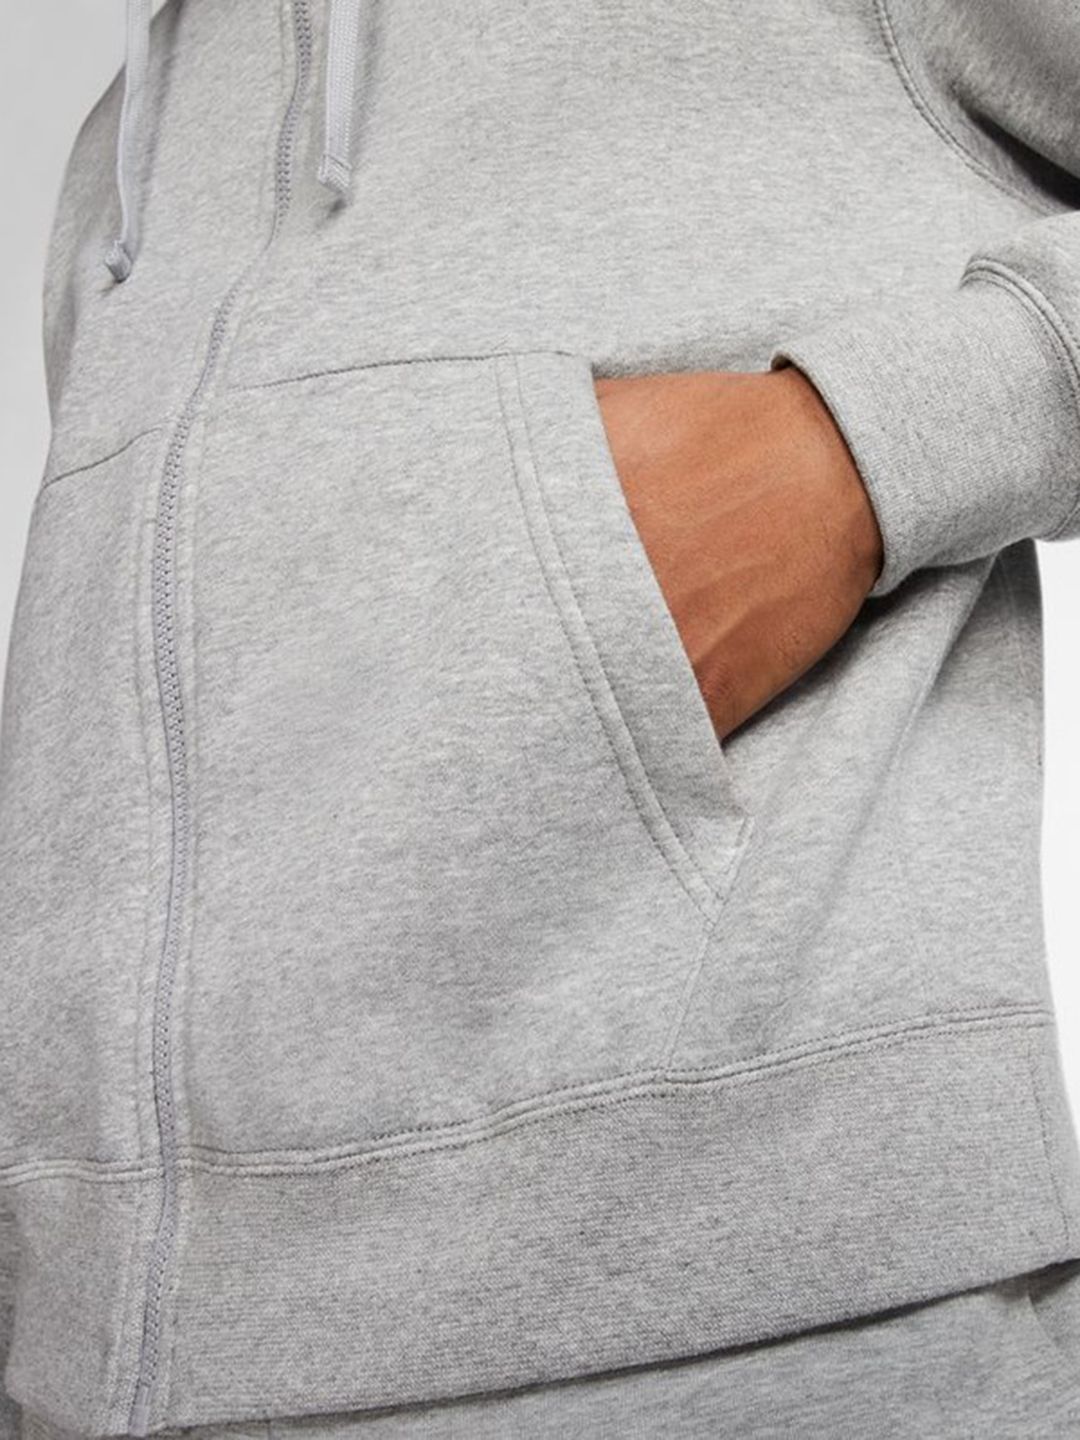 Buy Men Grey Sportswear Club Fleece Solid Hoodies From Fancode Shop.